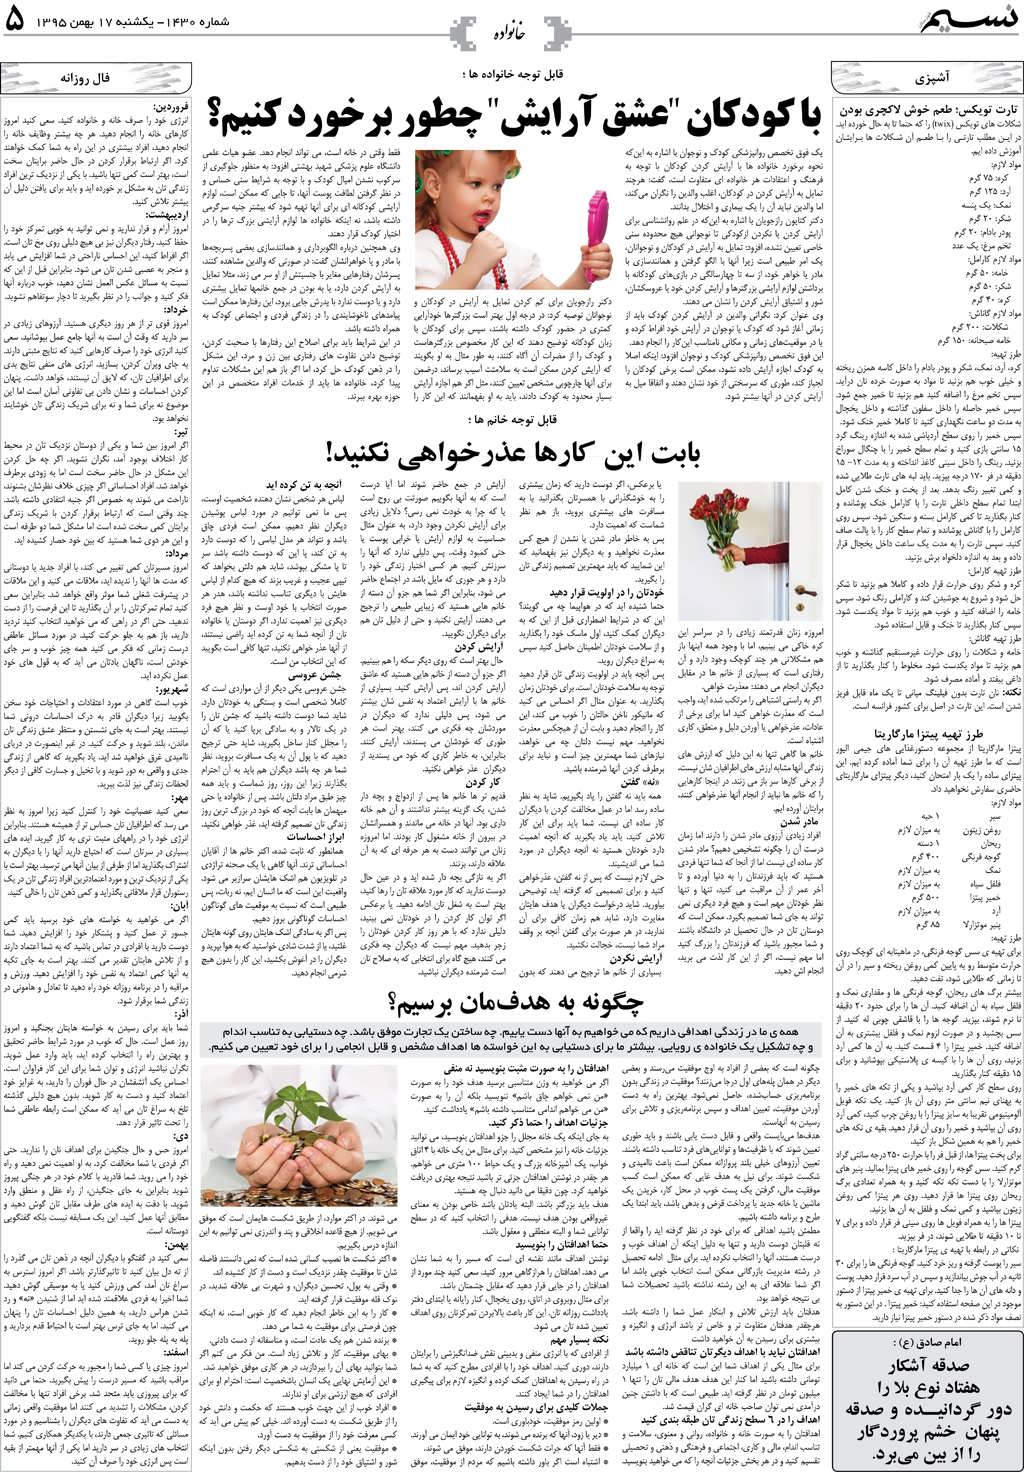 صفحه خانواده روزنامه نسیم شماره 1430